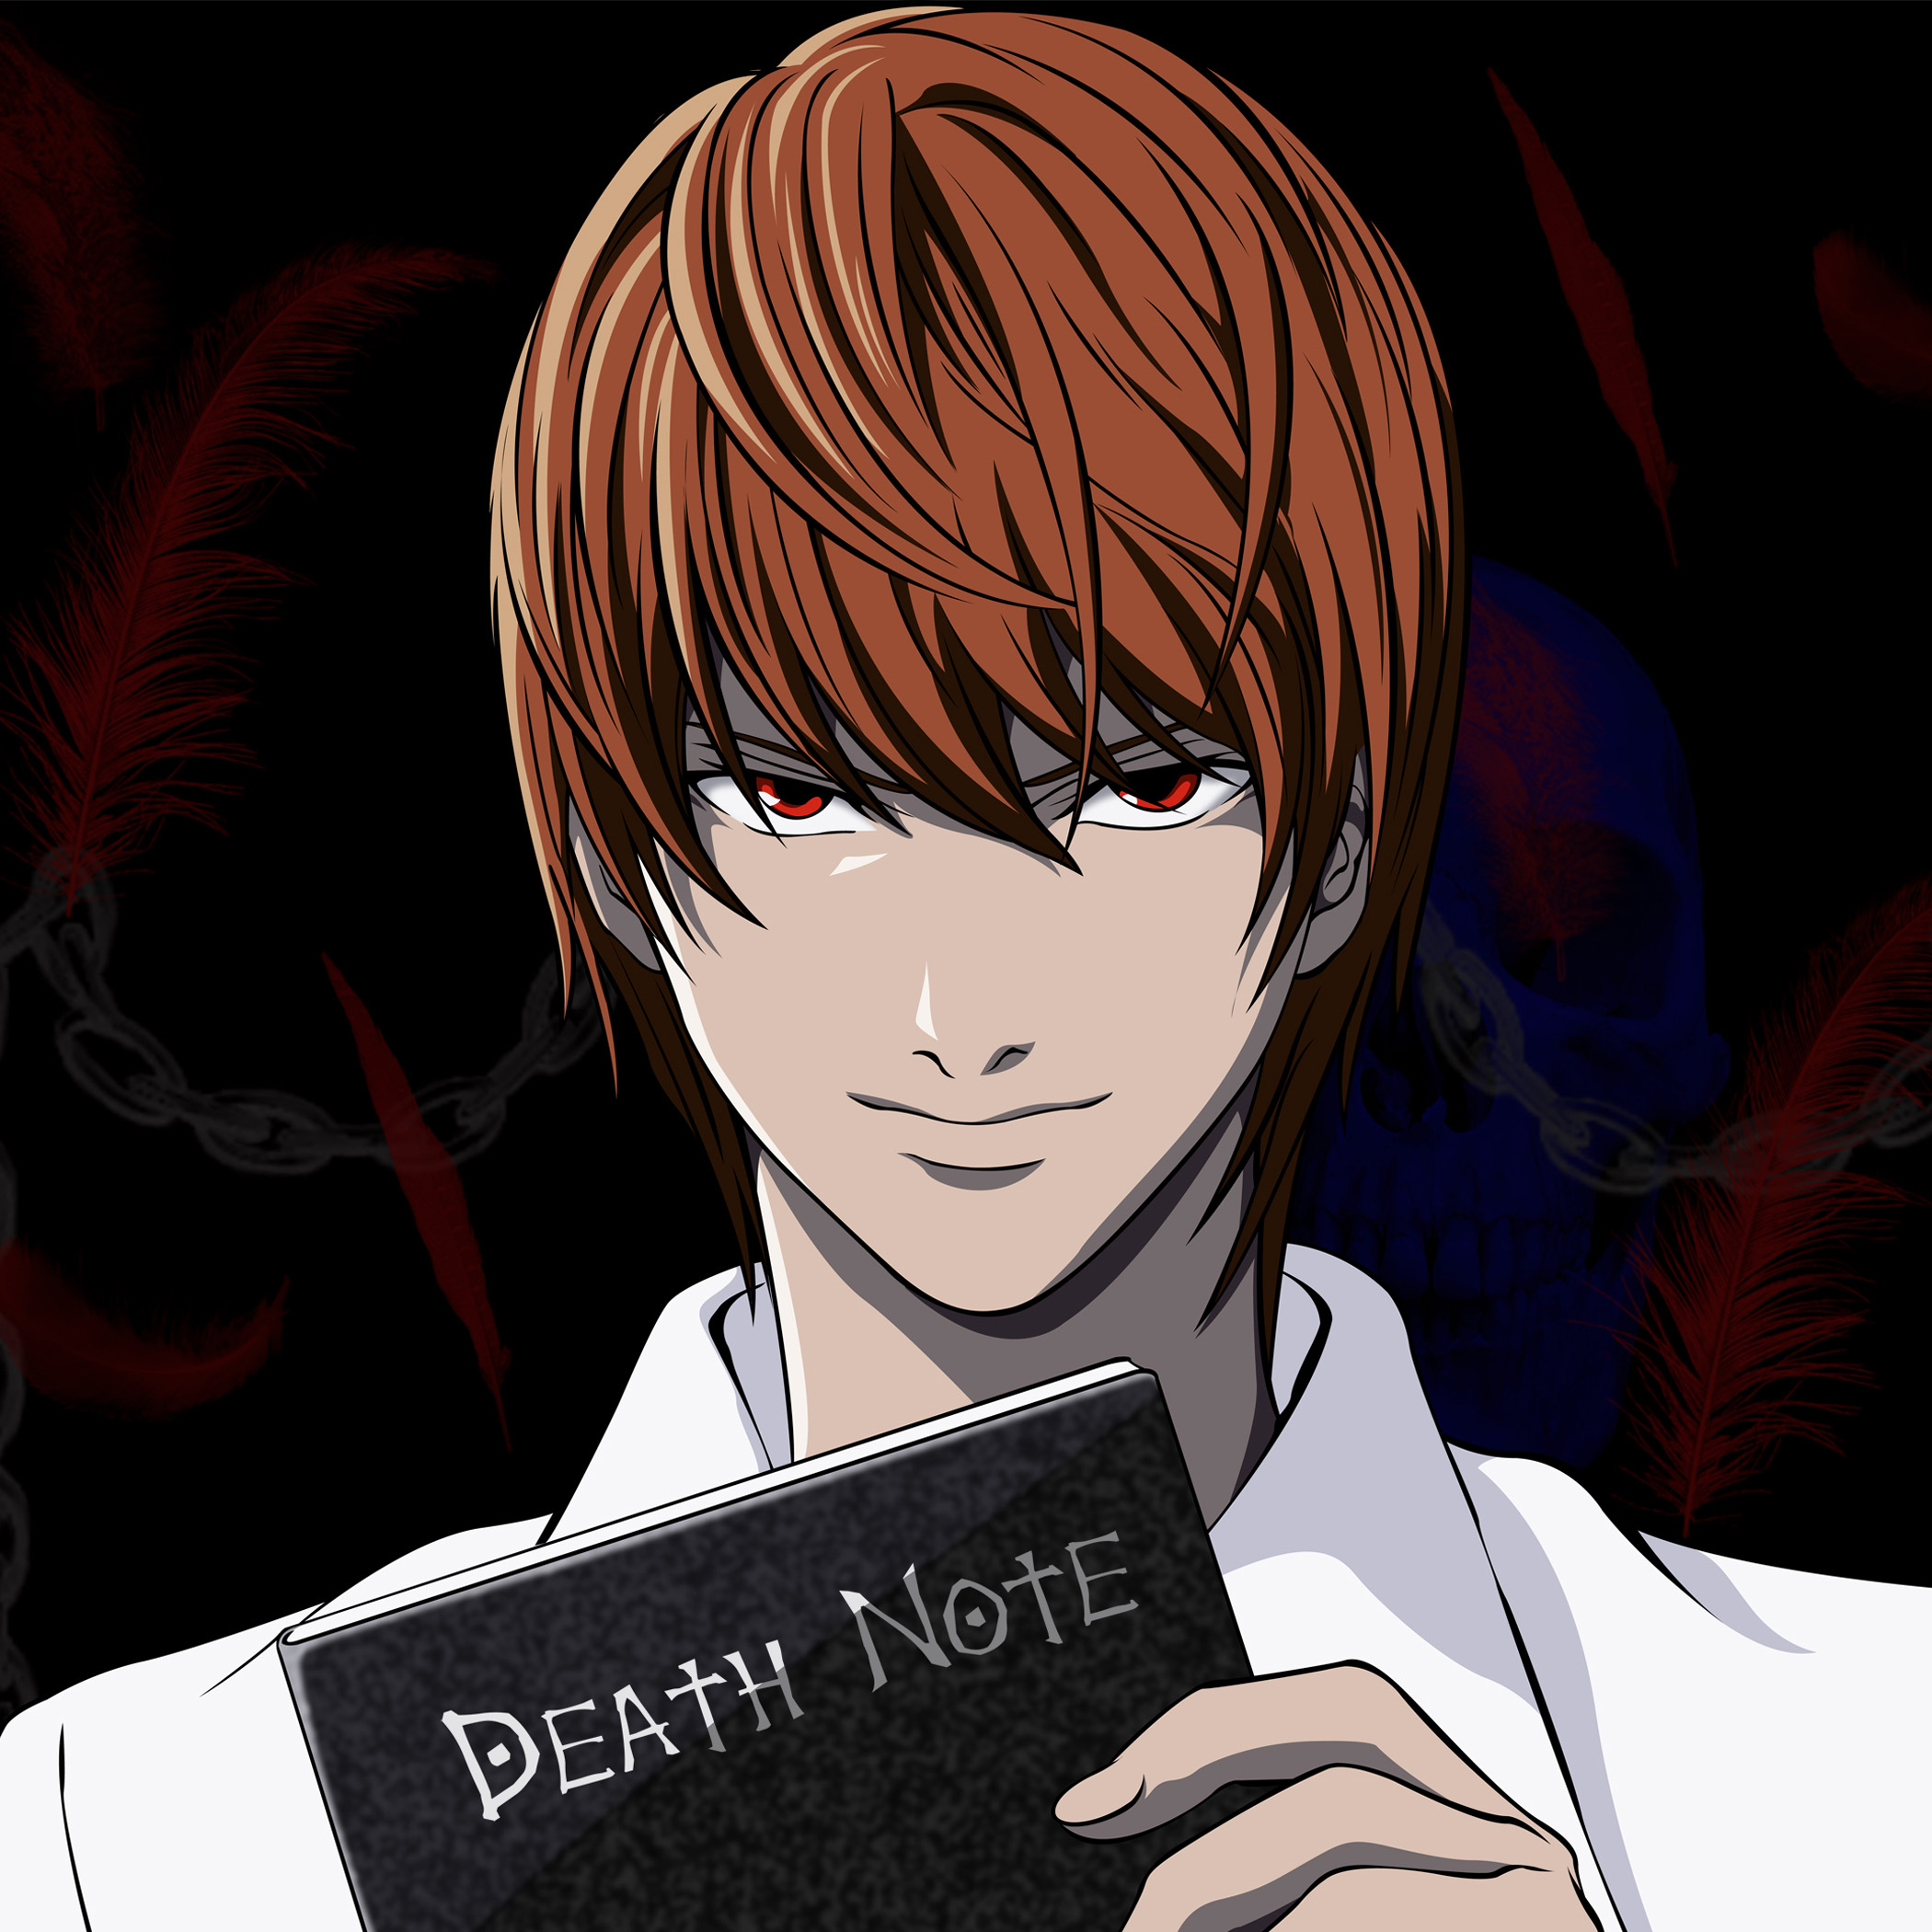 Light Yagami, protagonista di Death Note